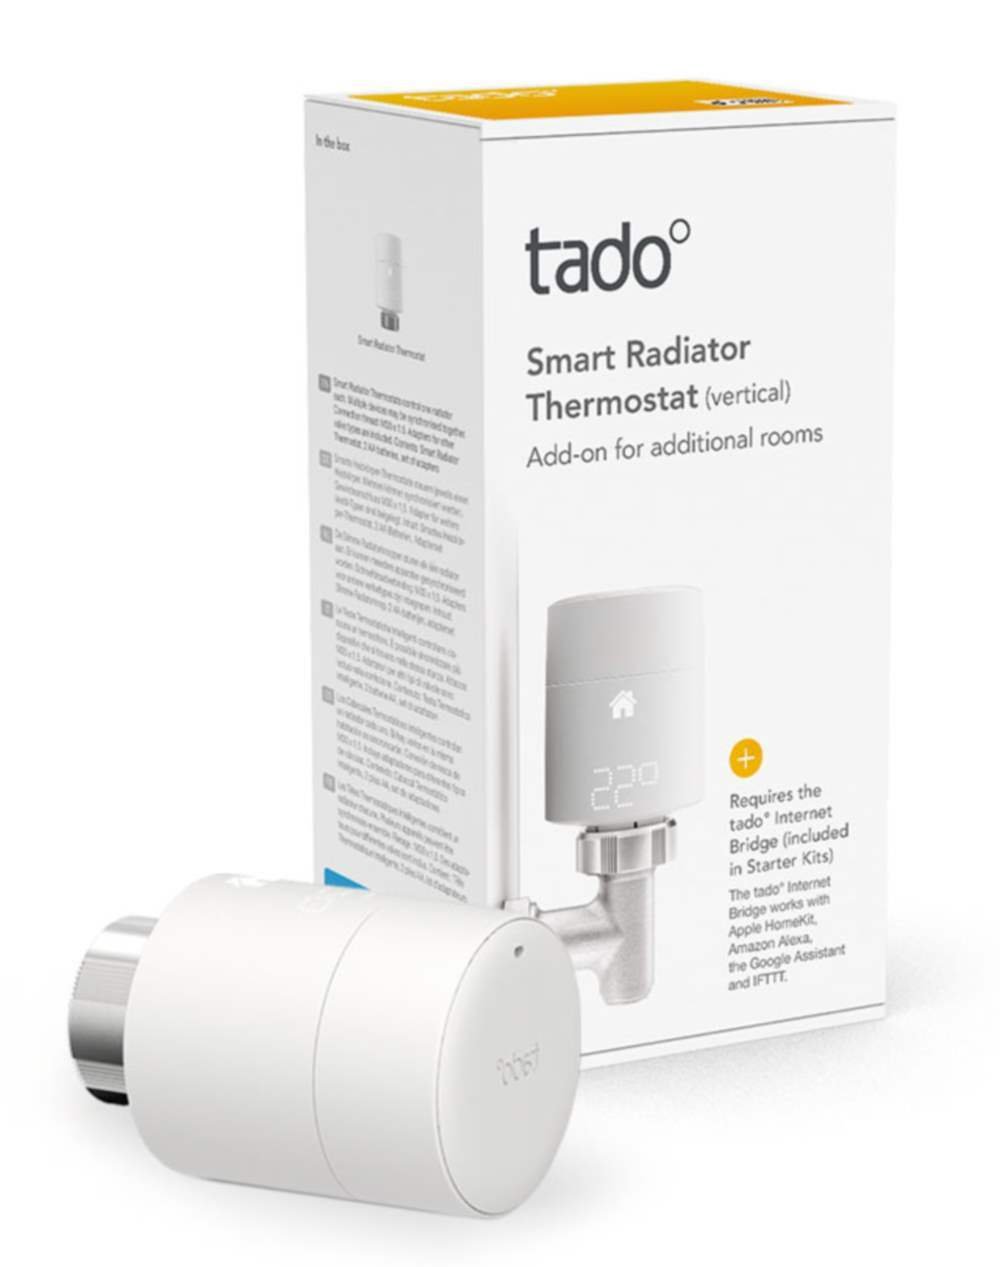 tado Smart Radiator Thermostat V Review